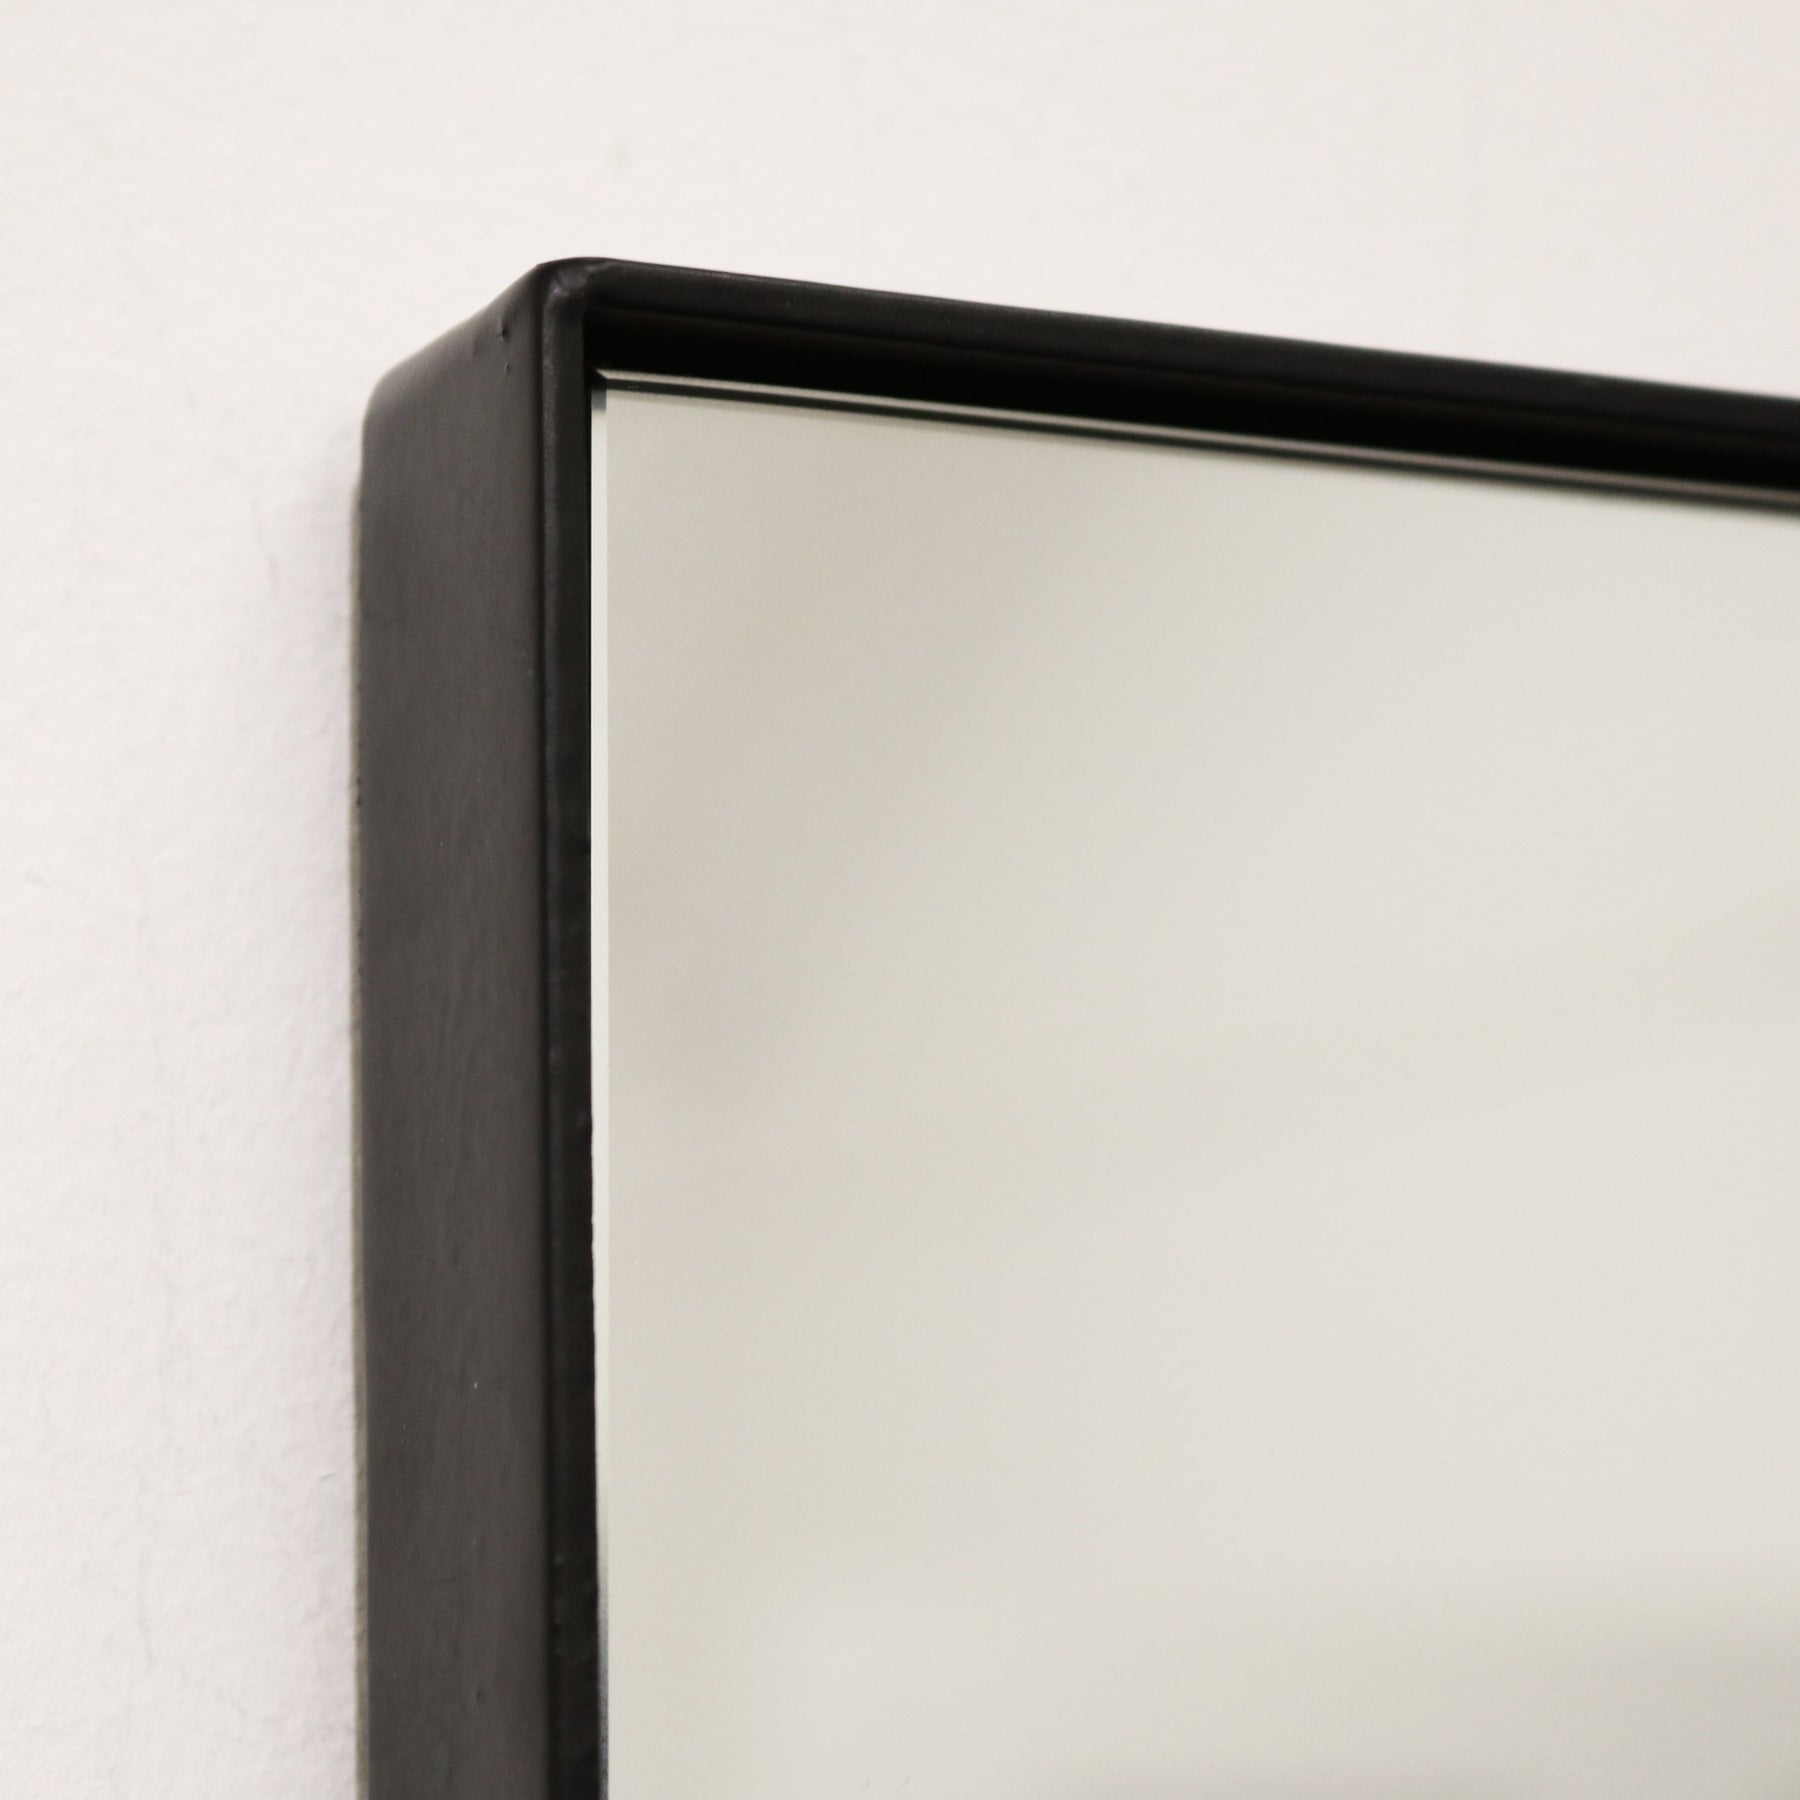 Detail shot of Black Rectangular Metal Wall Mirror corner